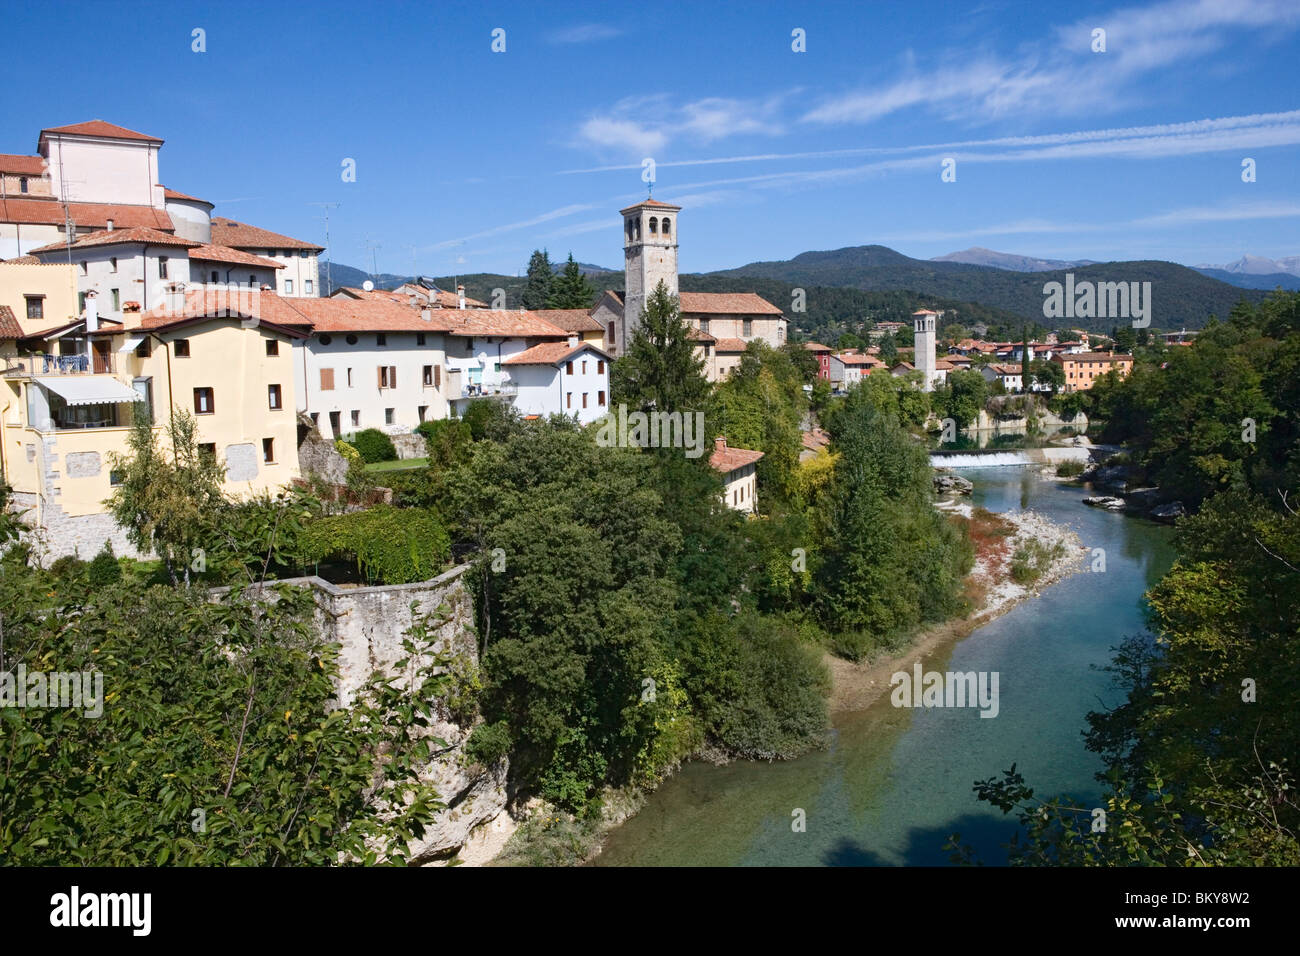 Natisone river and the old town of Cividale del Friuli, Friuli-Venezia Giulia, Italy Stock Photo